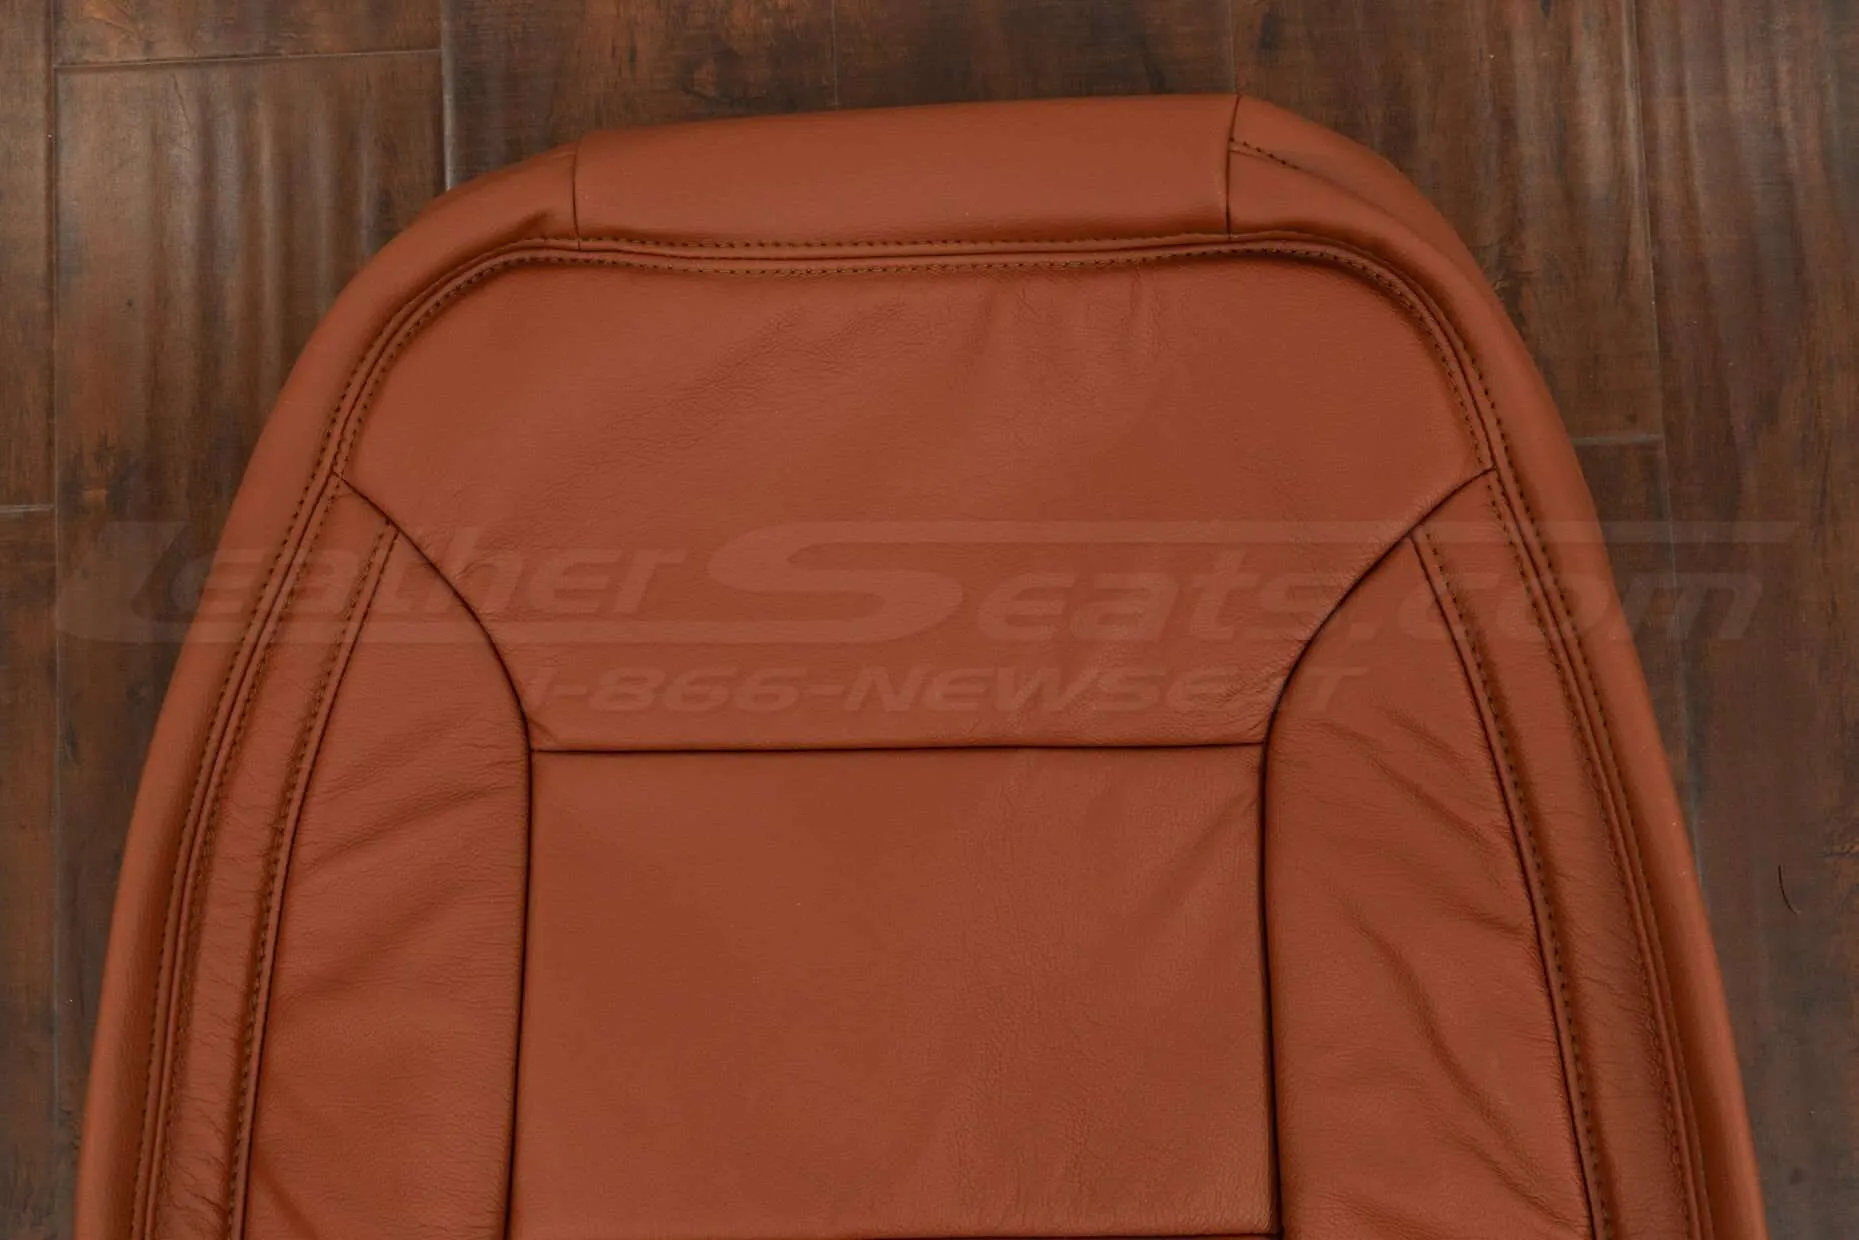 Upper section of backrest upholstery